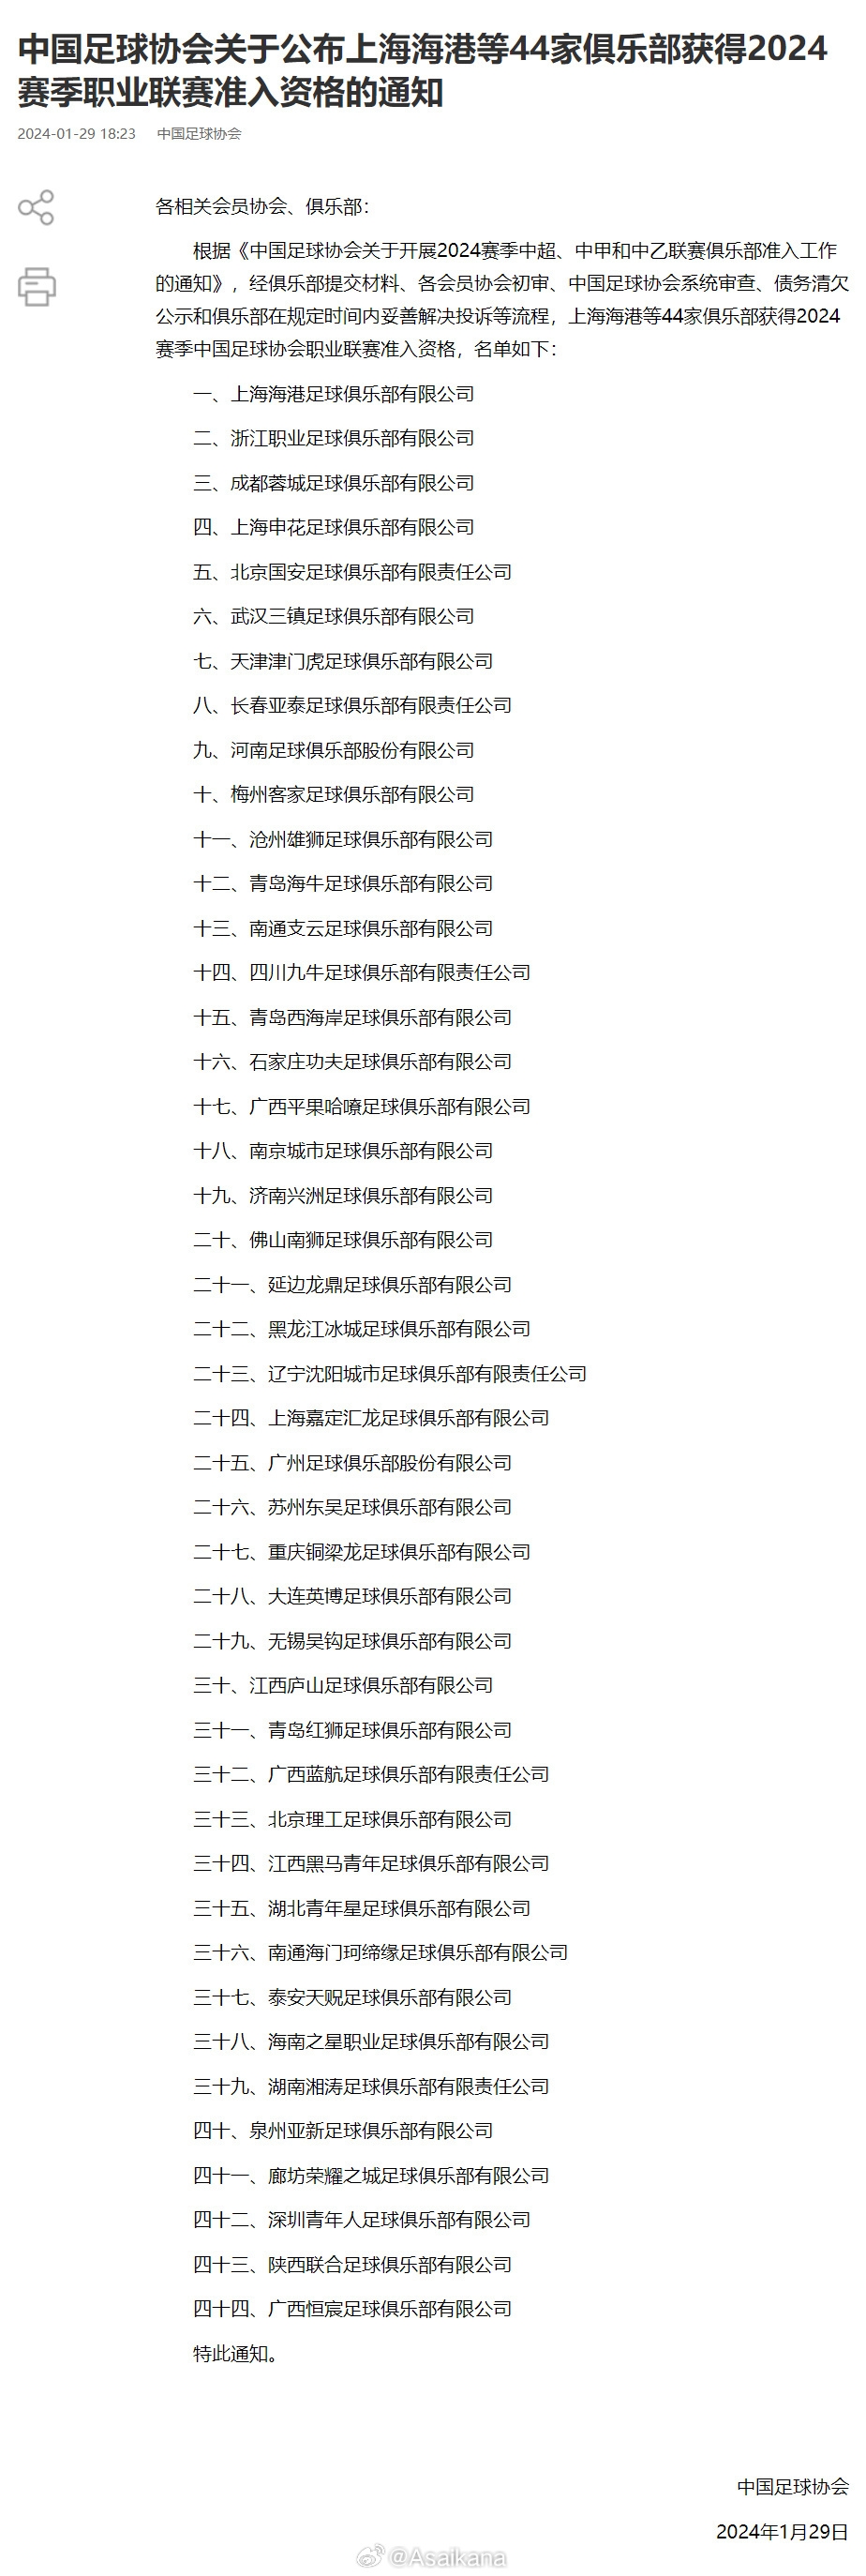 中甲丹东腾跃、中乙云南玉昆、武汉江城不在已公布的准入名单之列